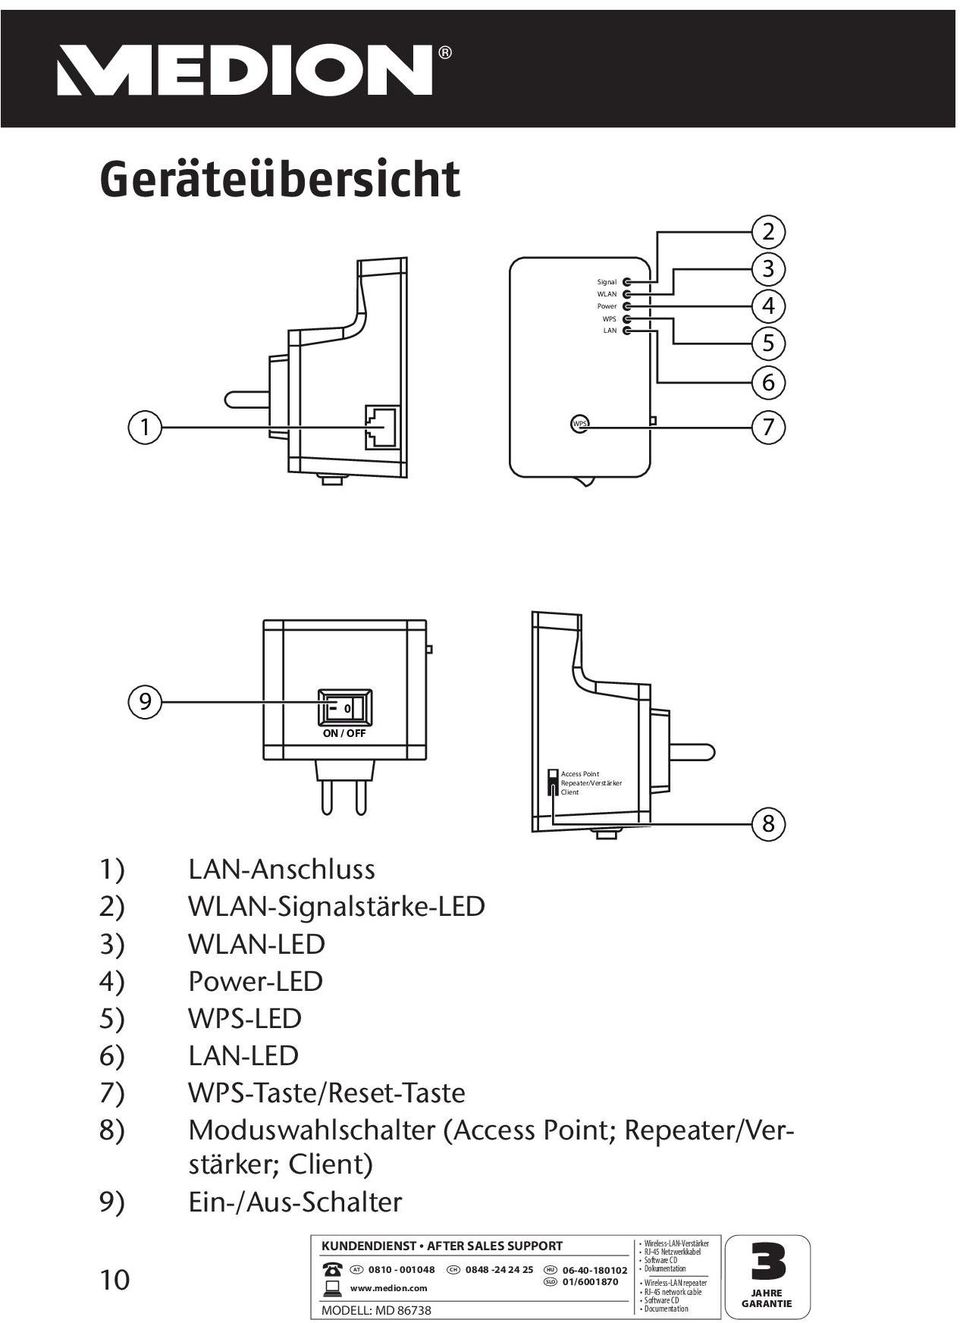 WPS-LED 6) LAN-LED 7) WPS-Taste/Reset-Taste 8) Moduswahlschalter (Access Point; Repeater/Verstärker;